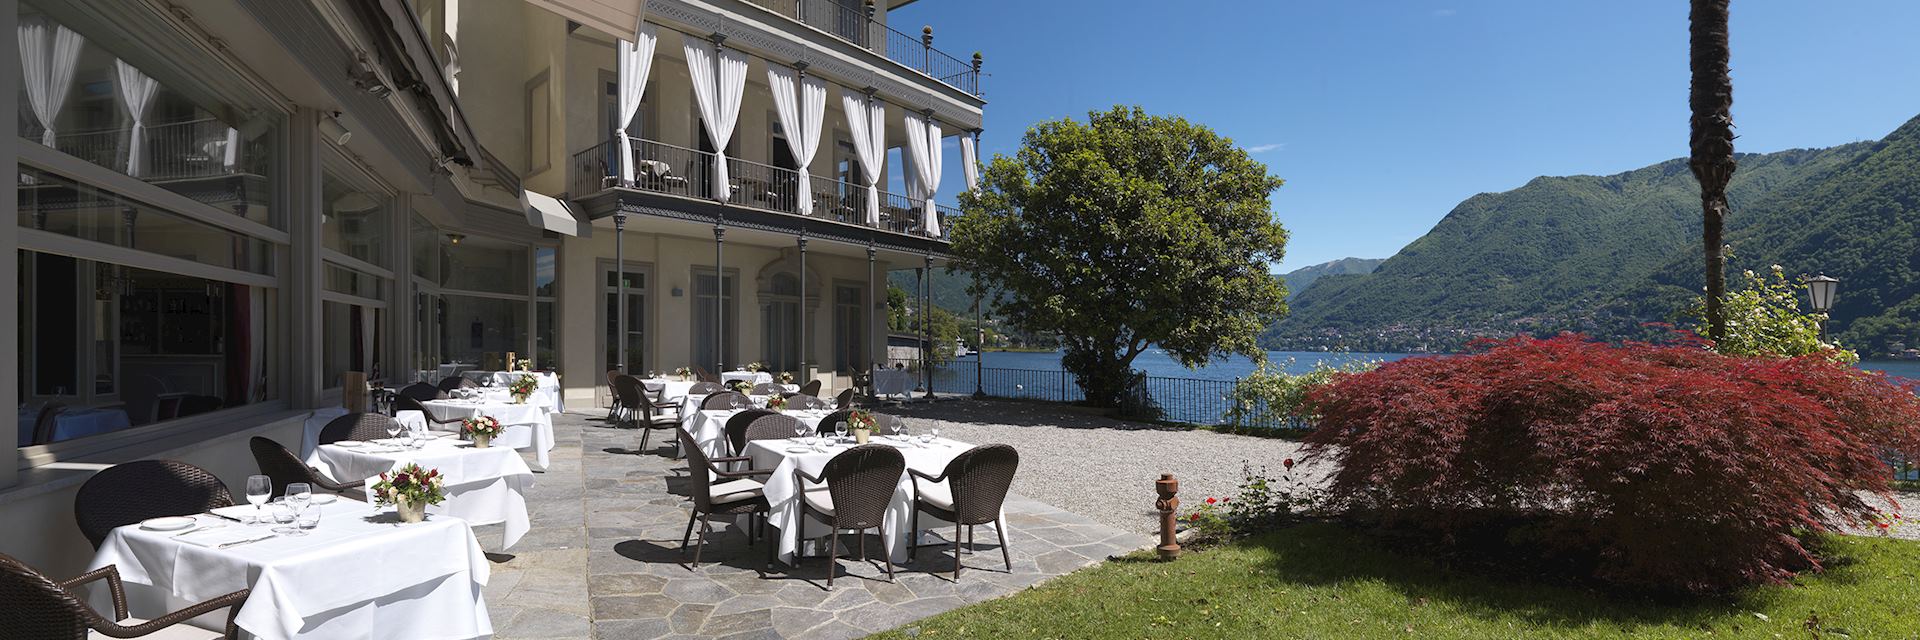 Hotel Villa Flori, Lake Como